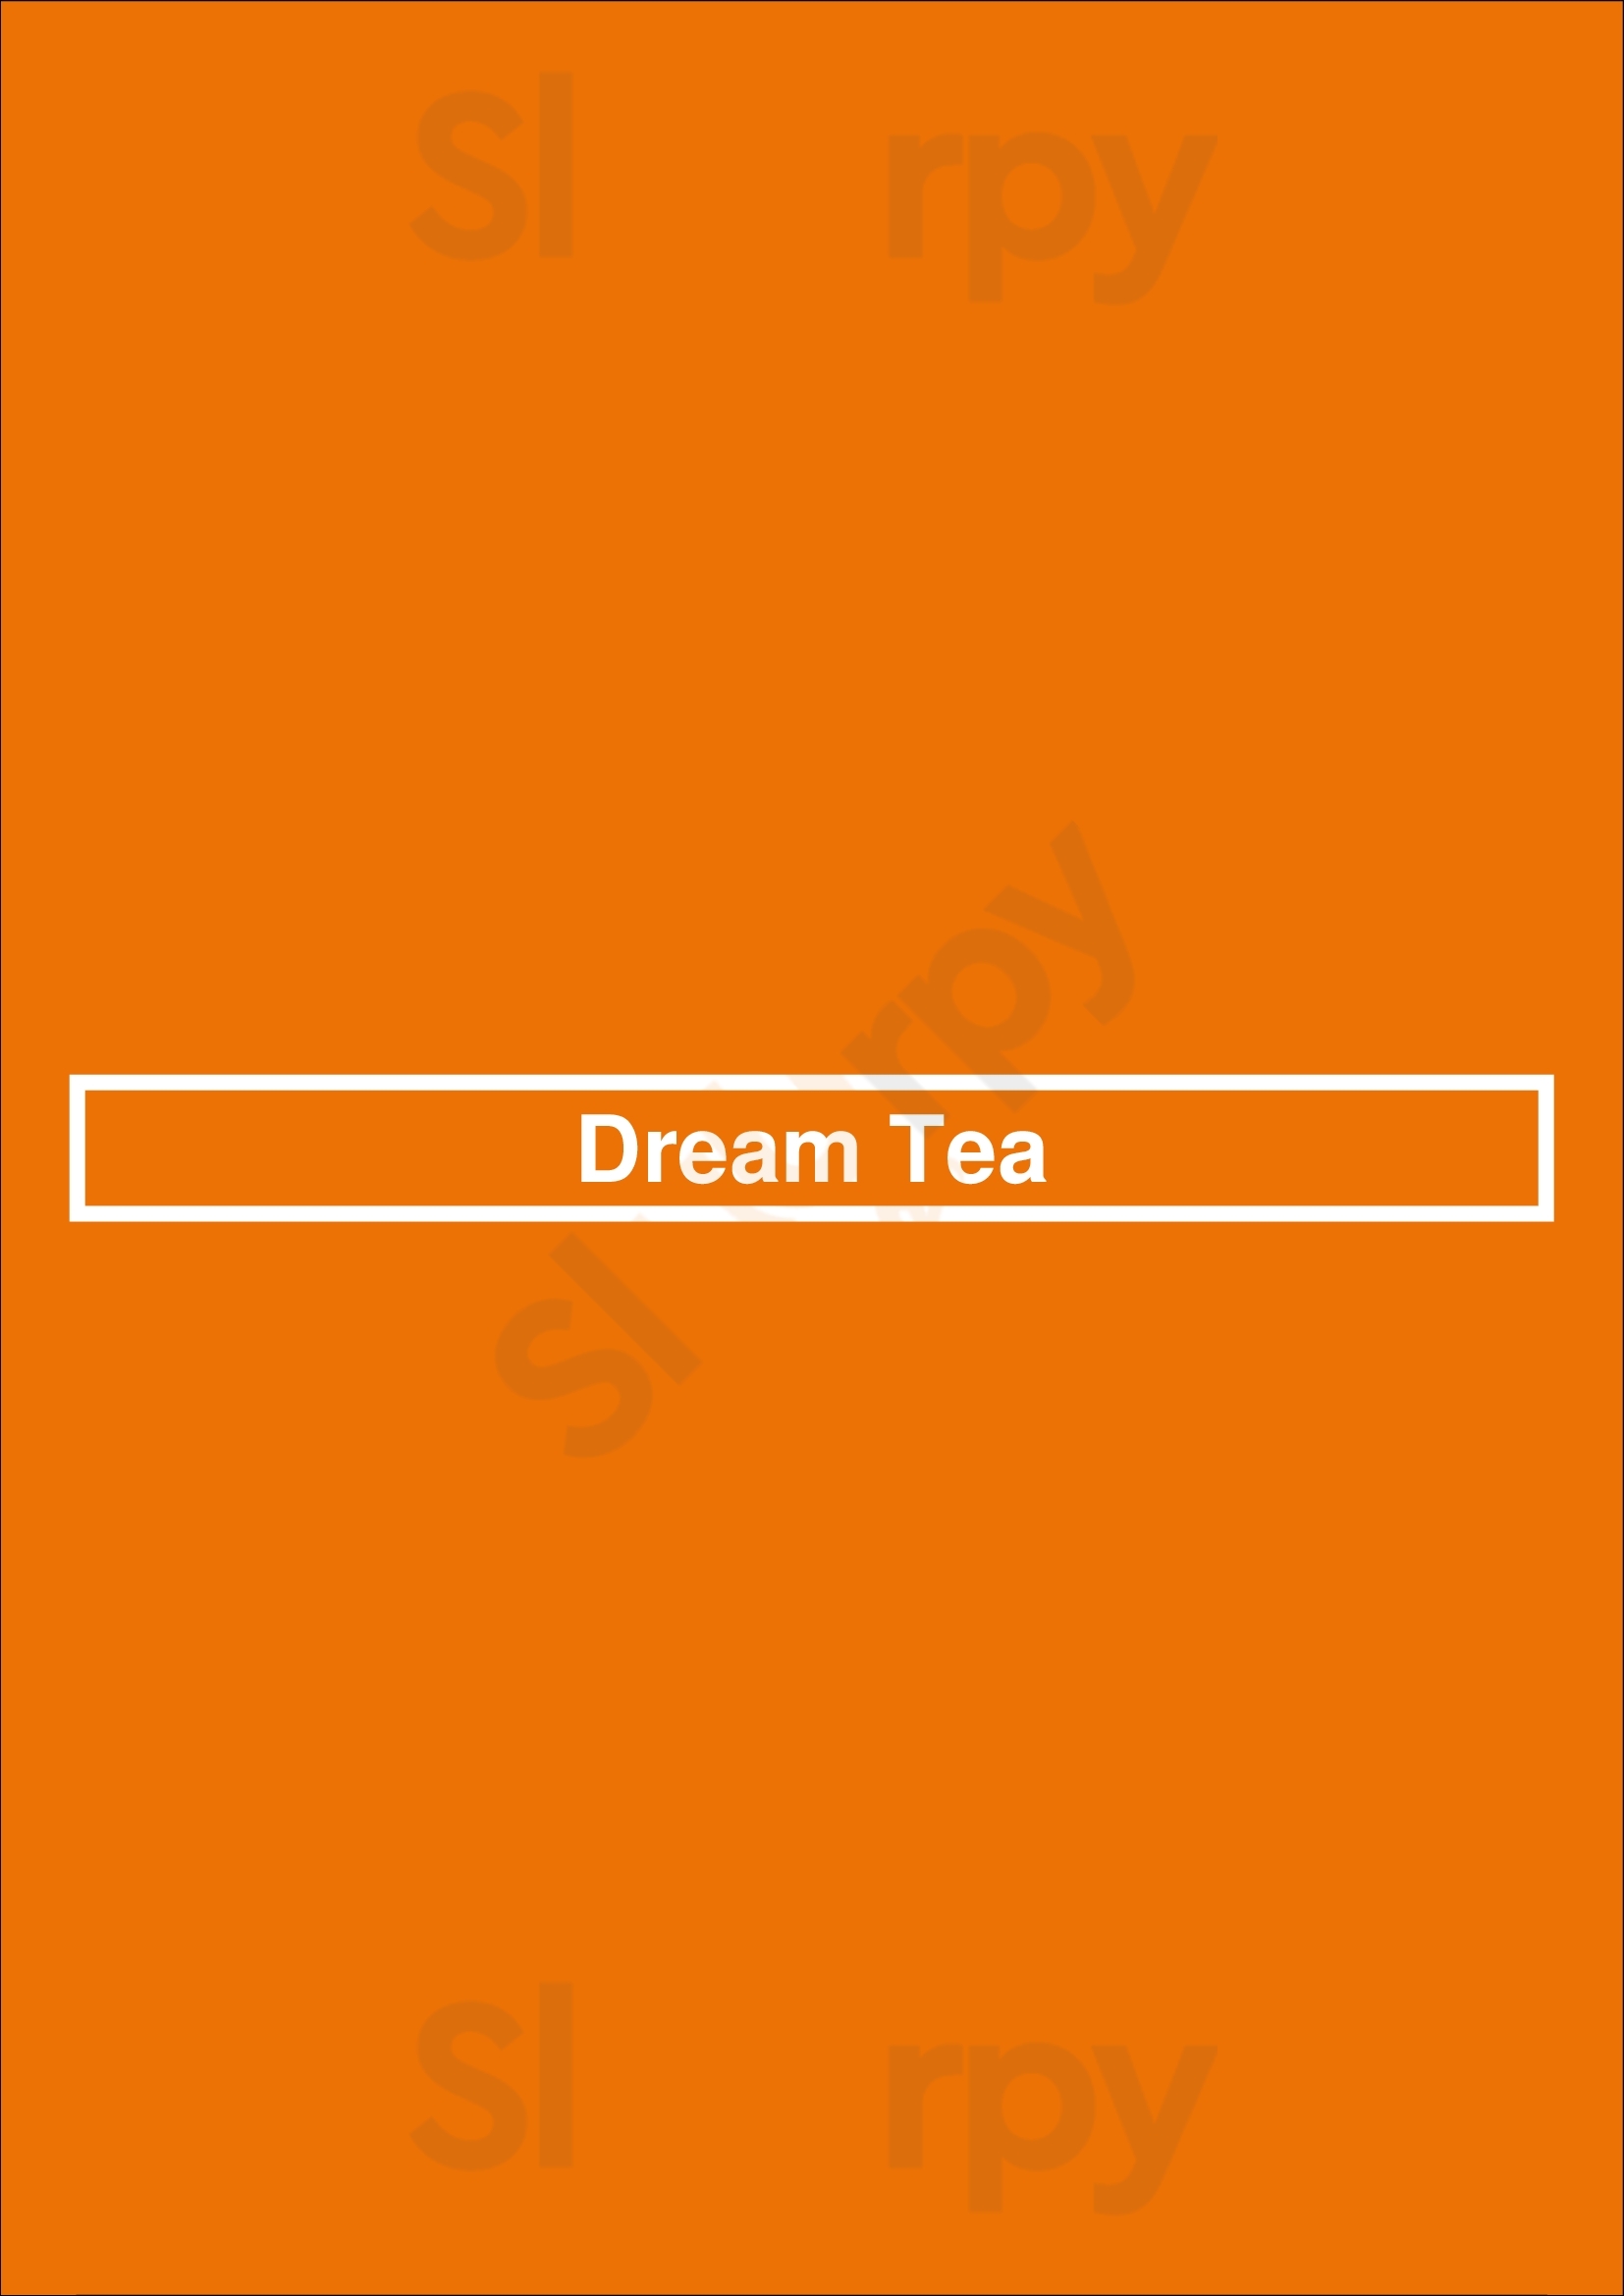 Dream Tea Edmonton Menu - 1